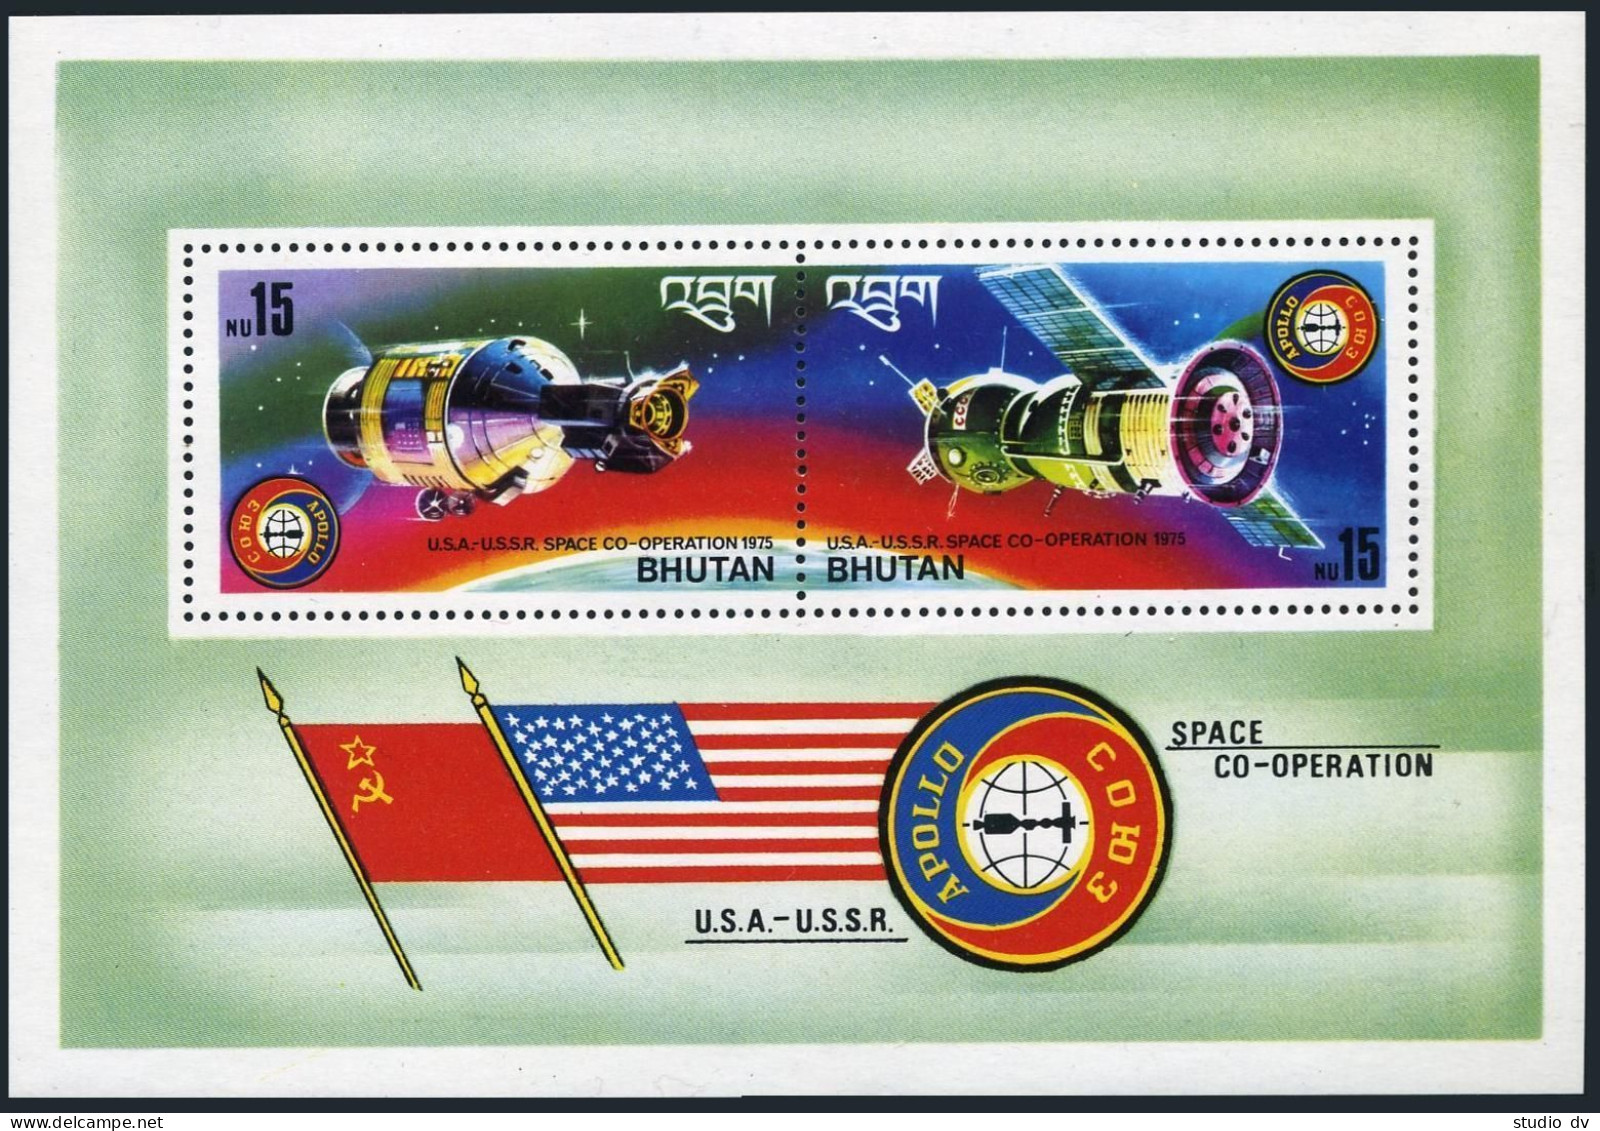 Bhutan 182-183 Pair, 182a, MNH. Mi 624-625,Bl.69. Apollo-Soyuz Space Test, 1975. - Bhoutan